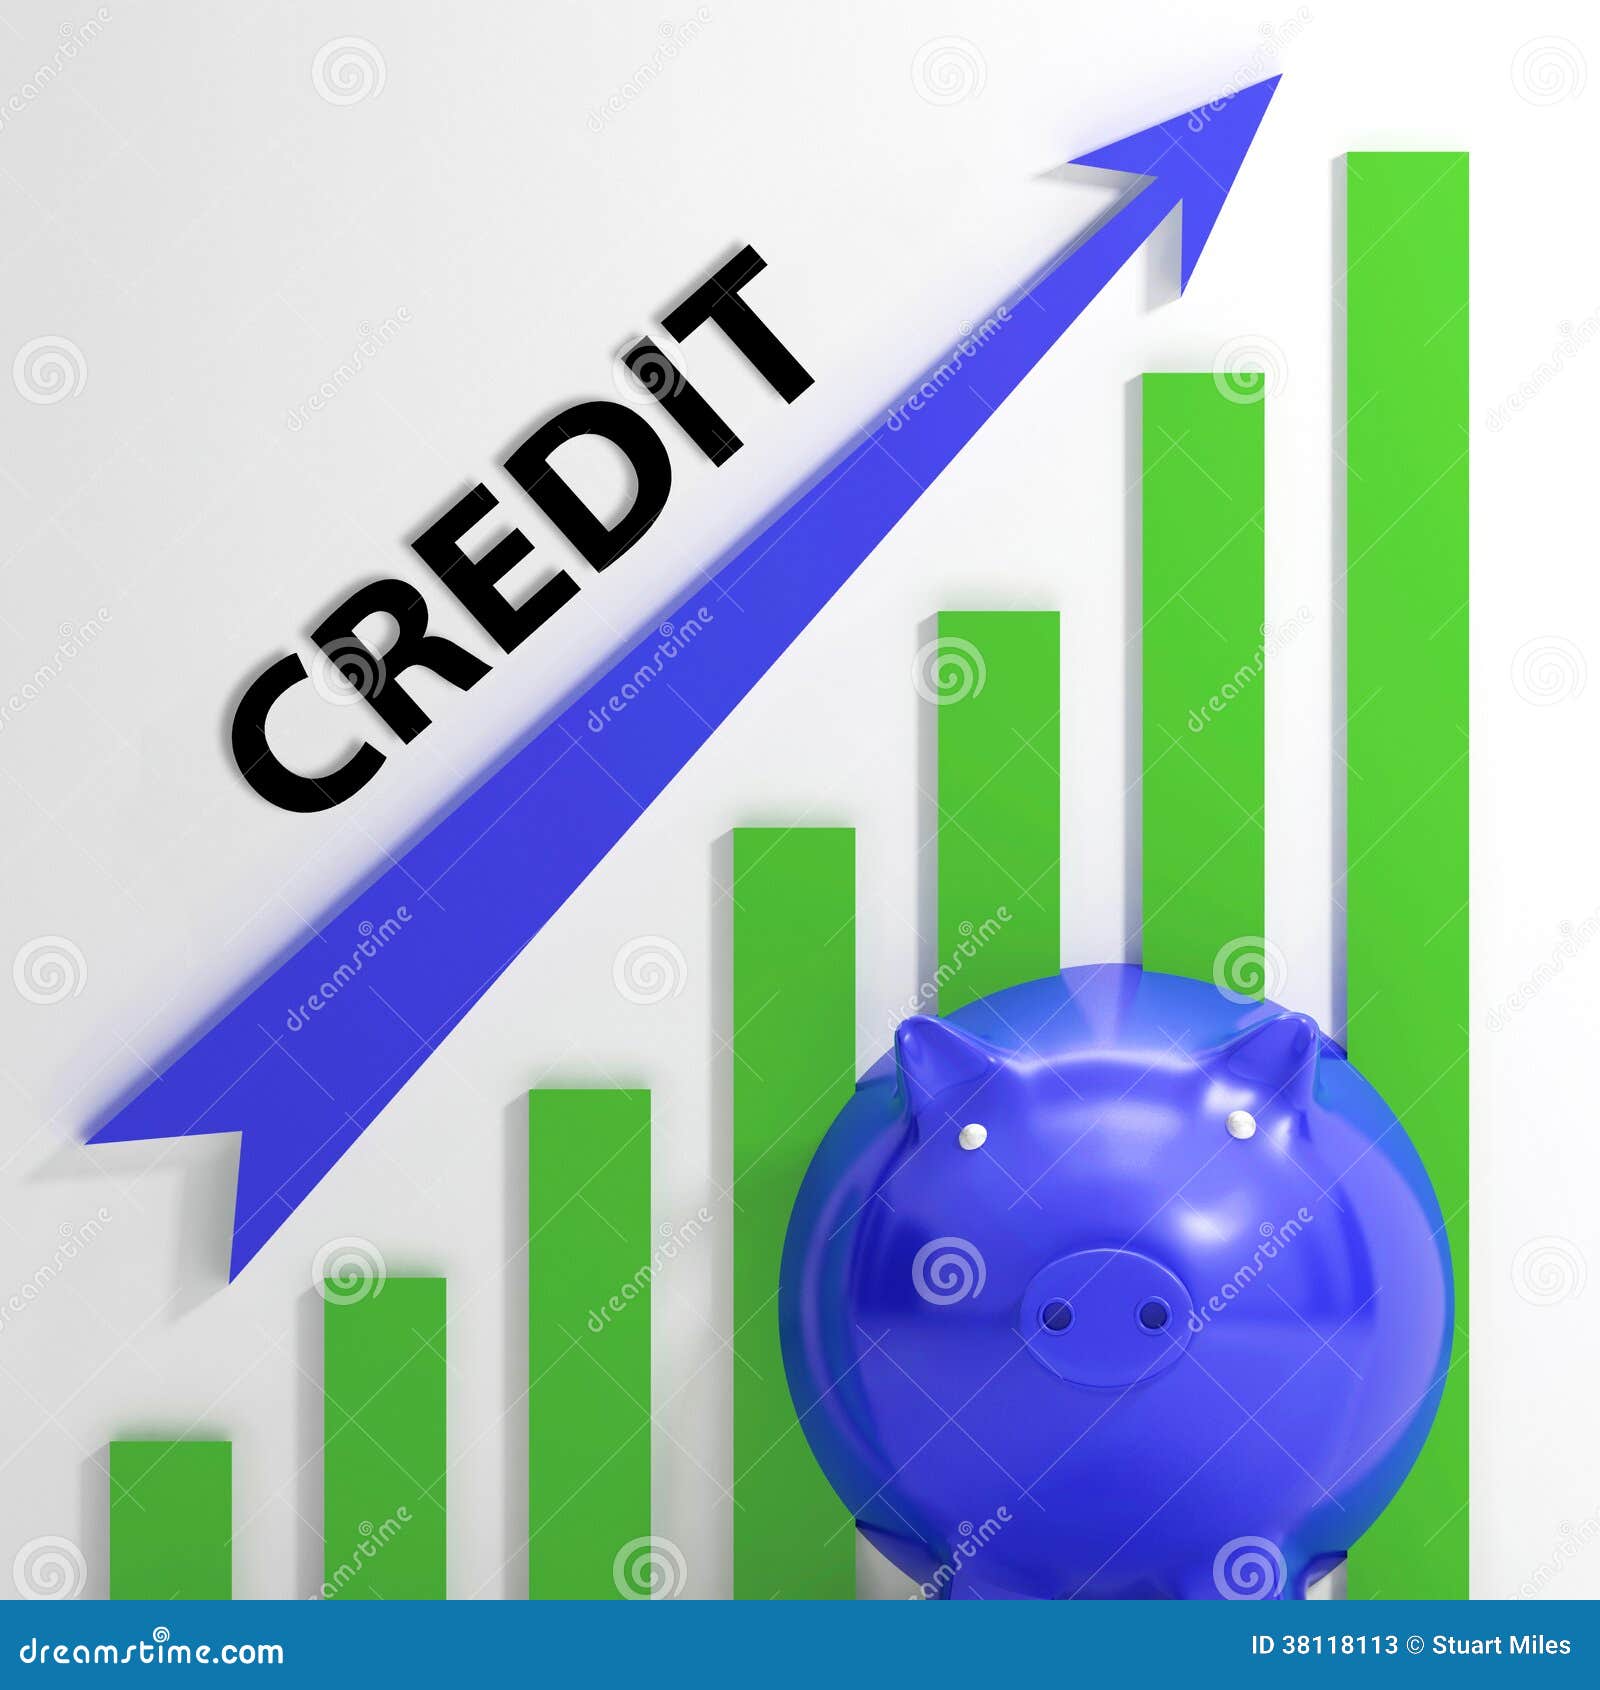 credit karma personal loans